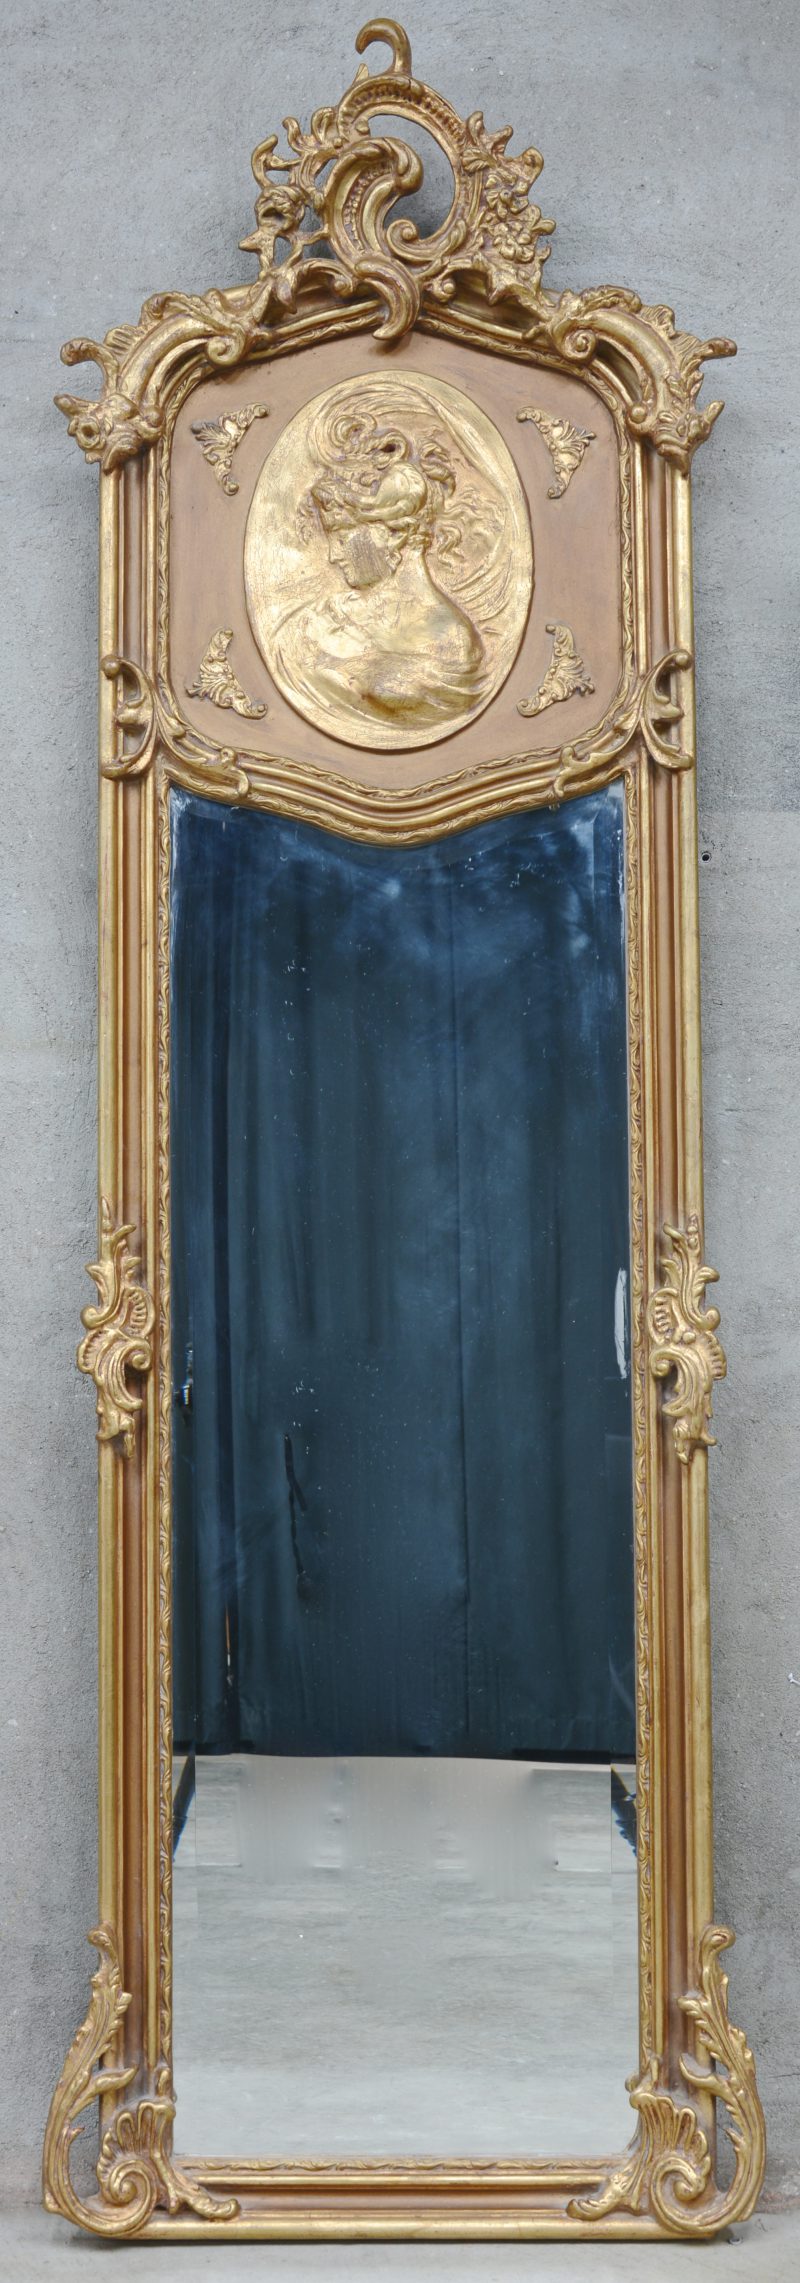 Een vergulde spiegel in Lodewijl XV-stijl met een vrouwenbuste in een medaillon en een rocaille in de kuif.